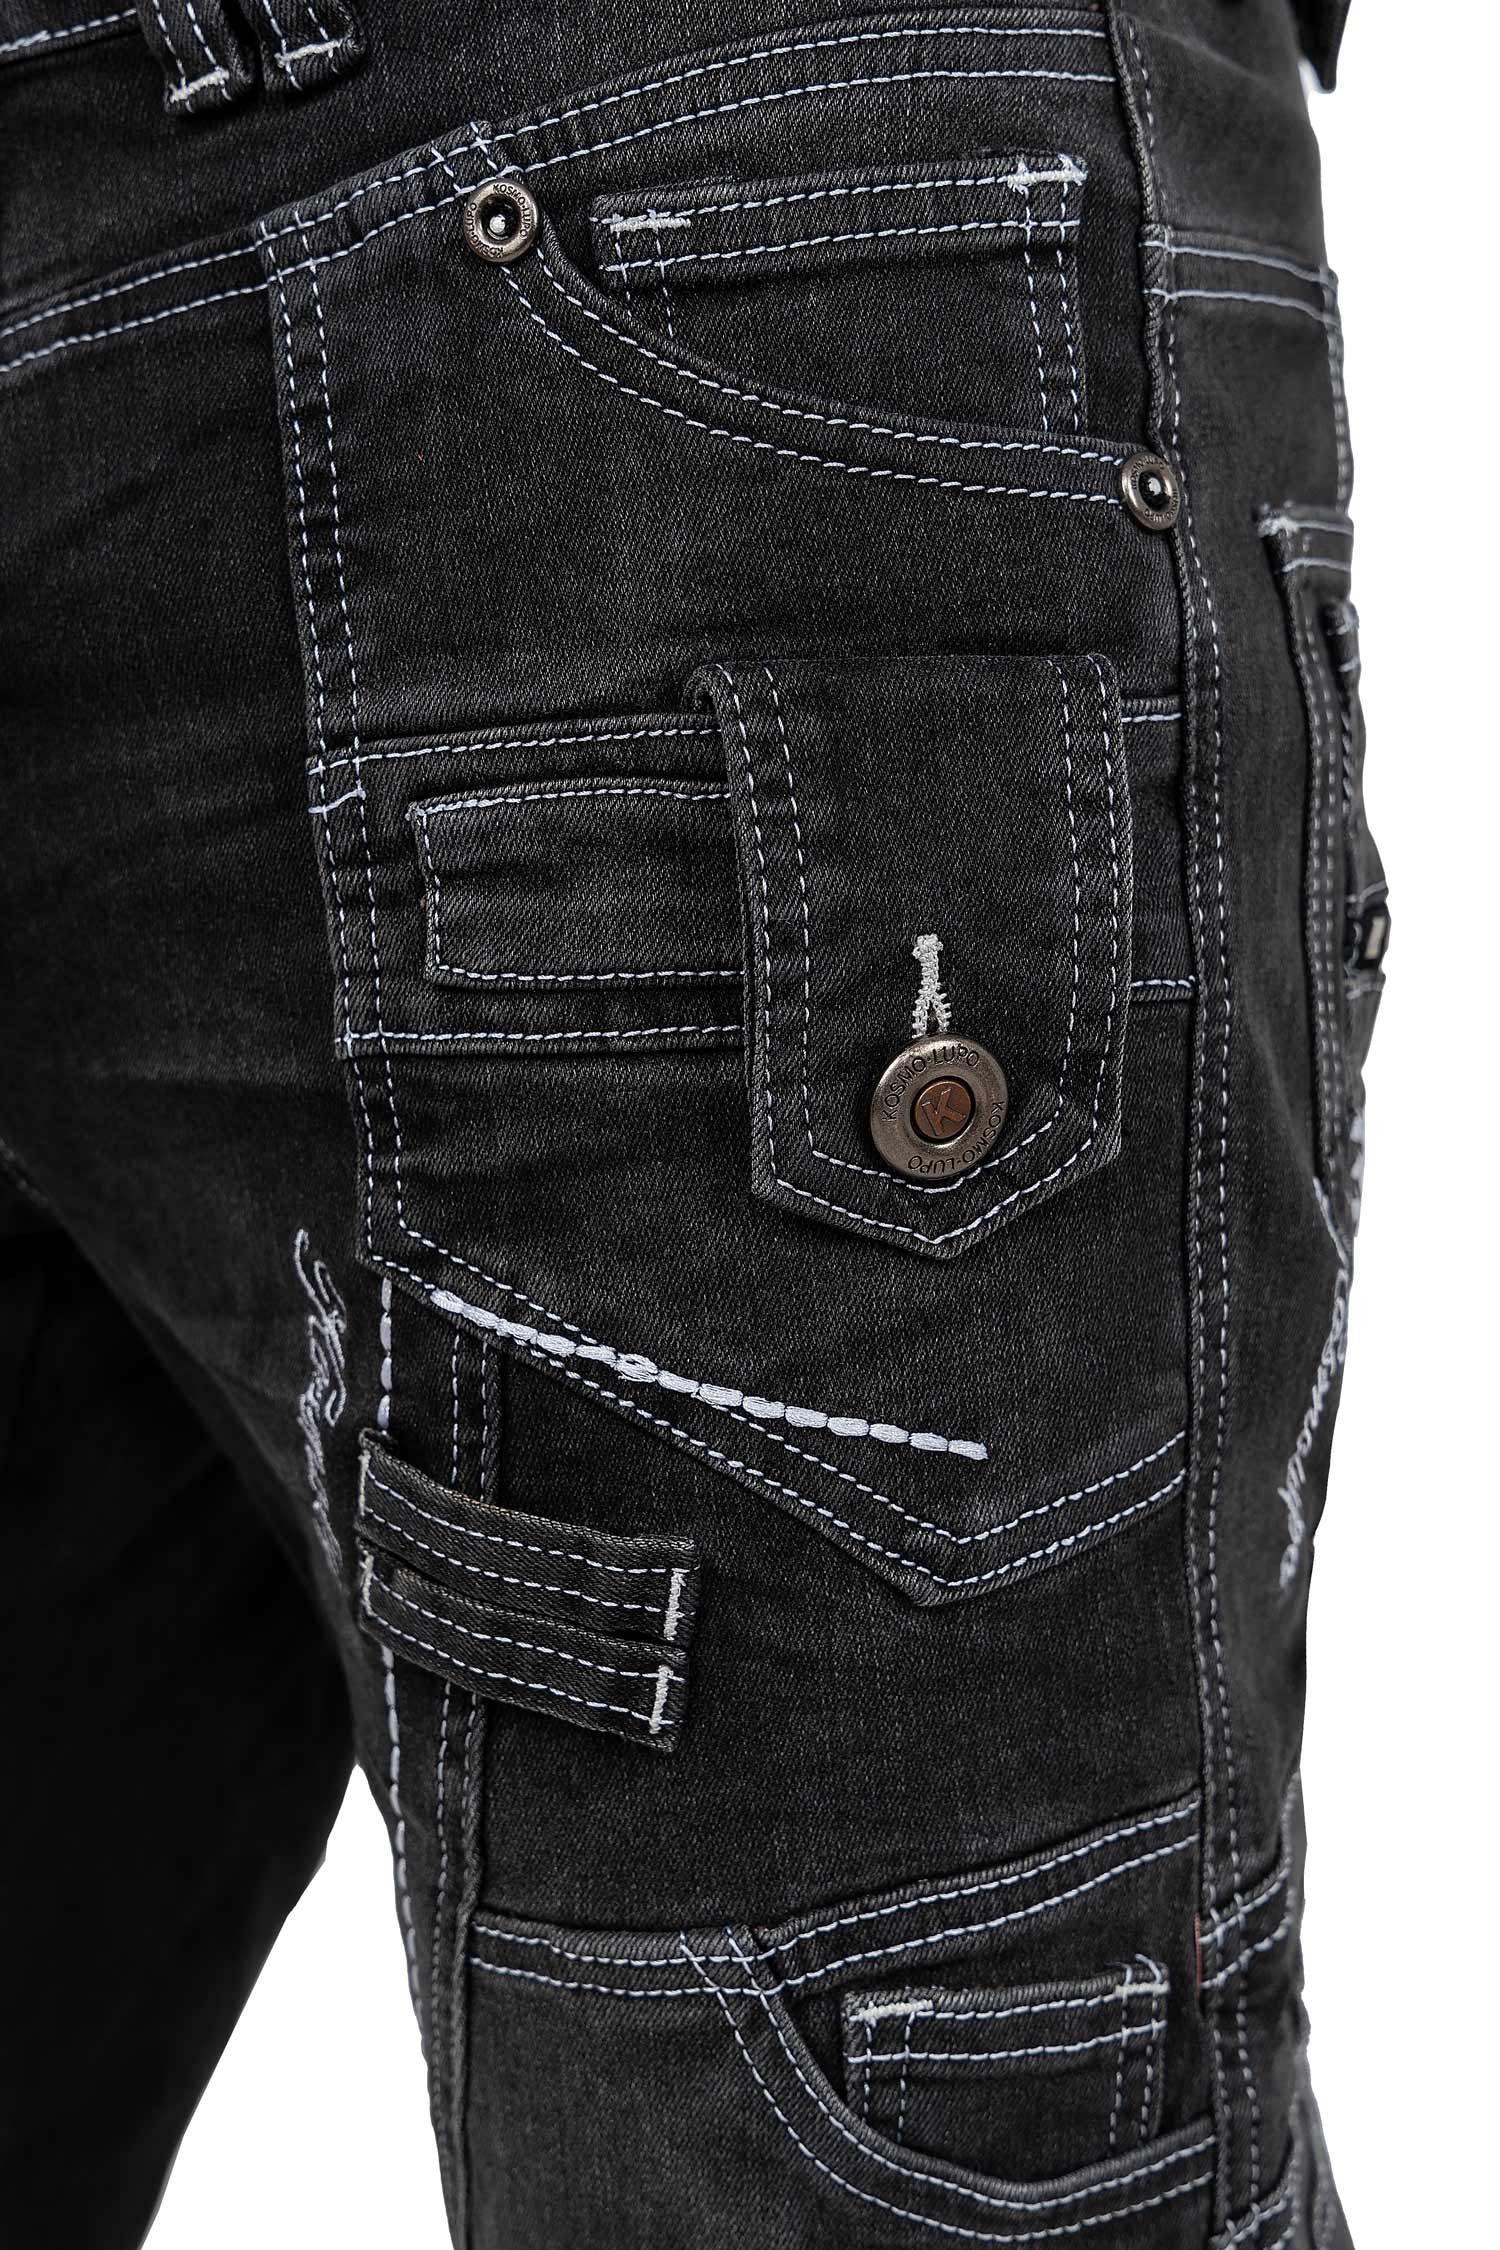 Kosmo Lupo 5-Pocket-Jeans Auffällige mit Verzierungen BA-KM001 grau und Herren Hose Nieten